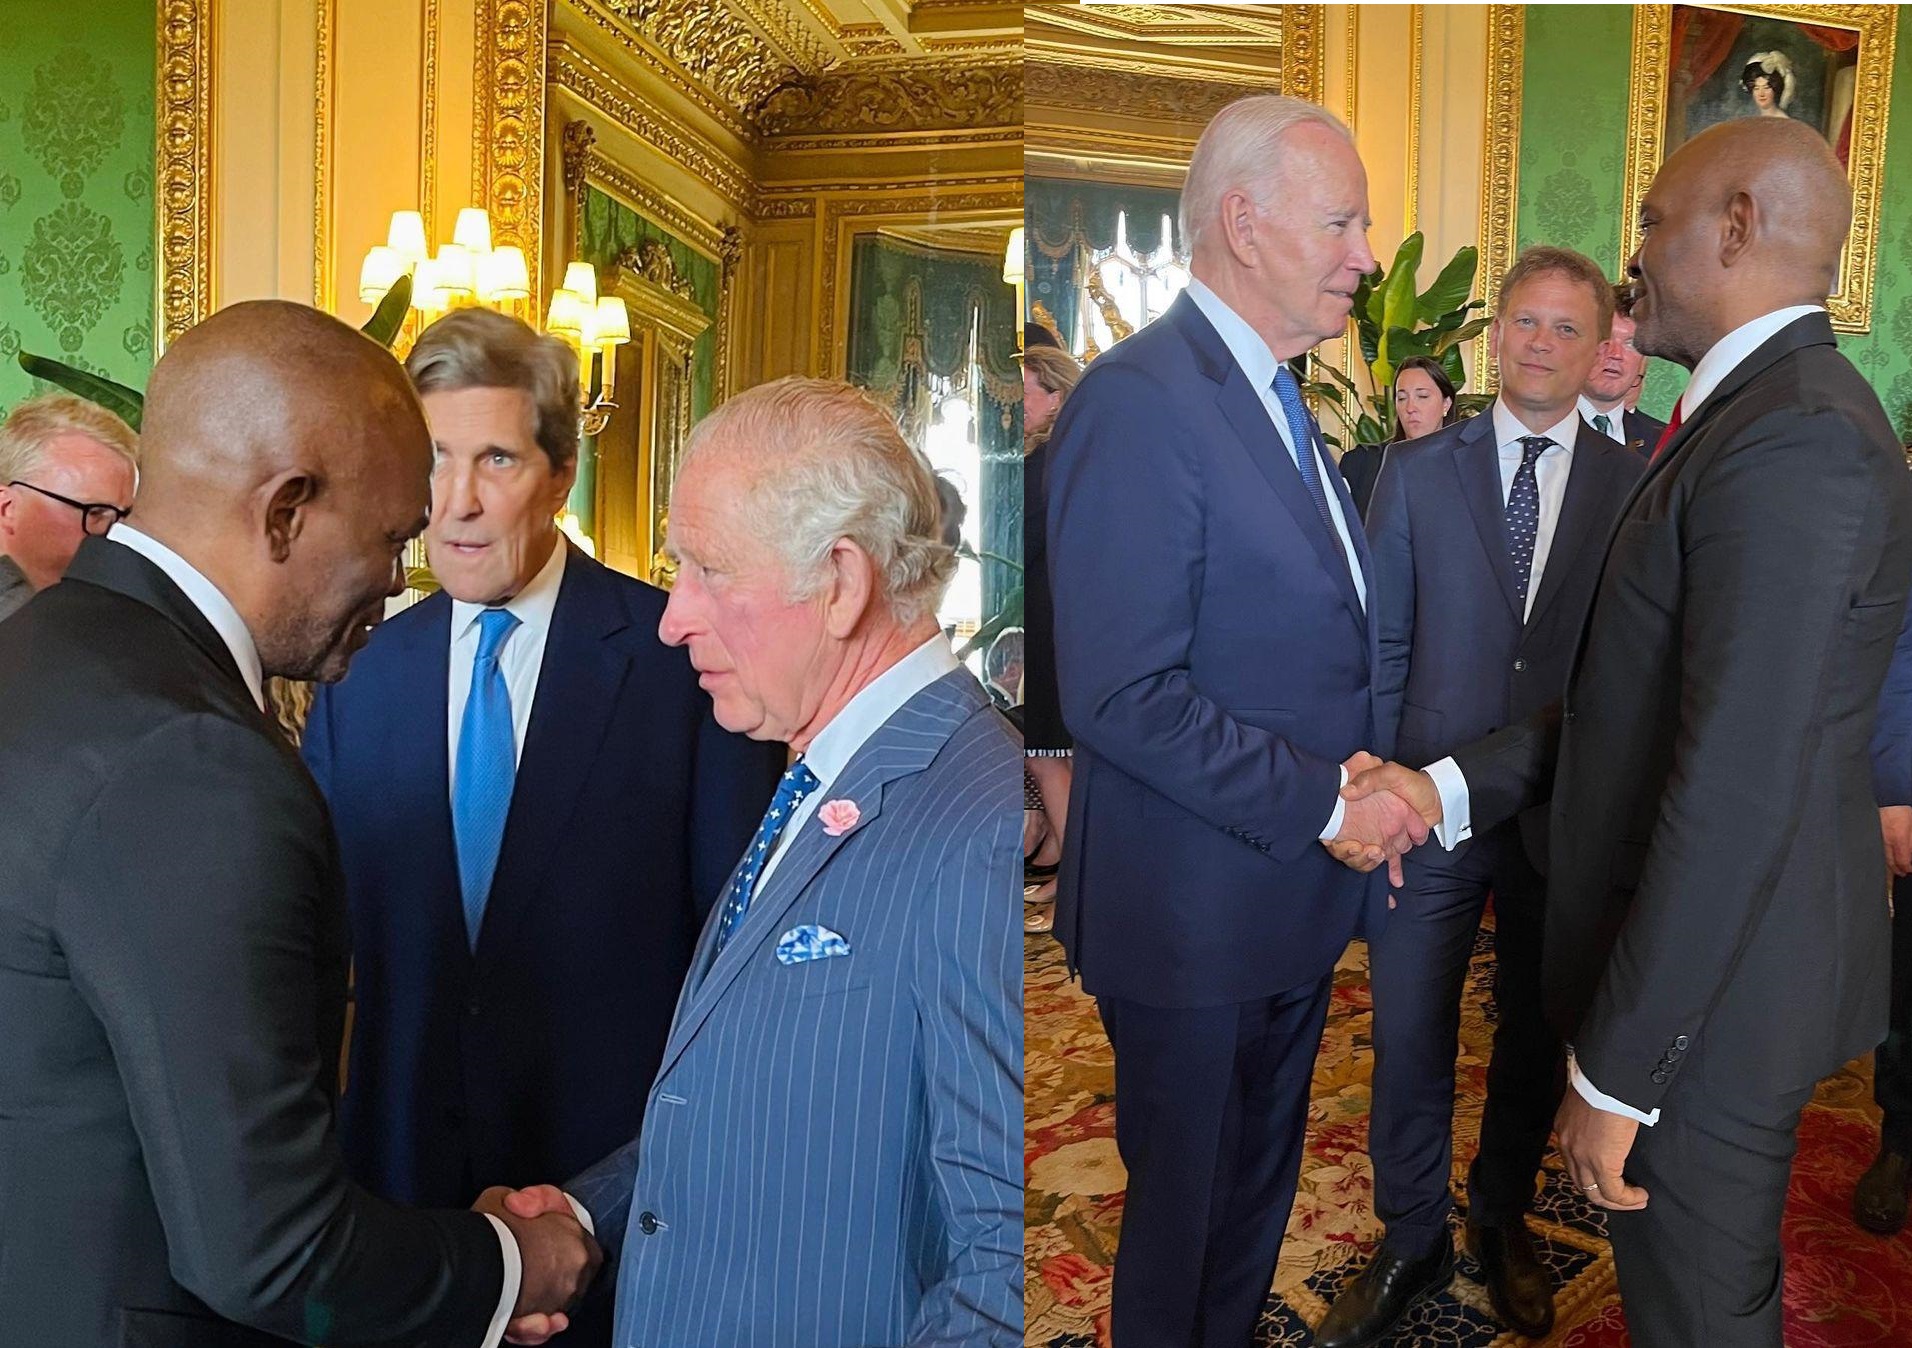 Tony Elumelu meets King Charles III, Biden